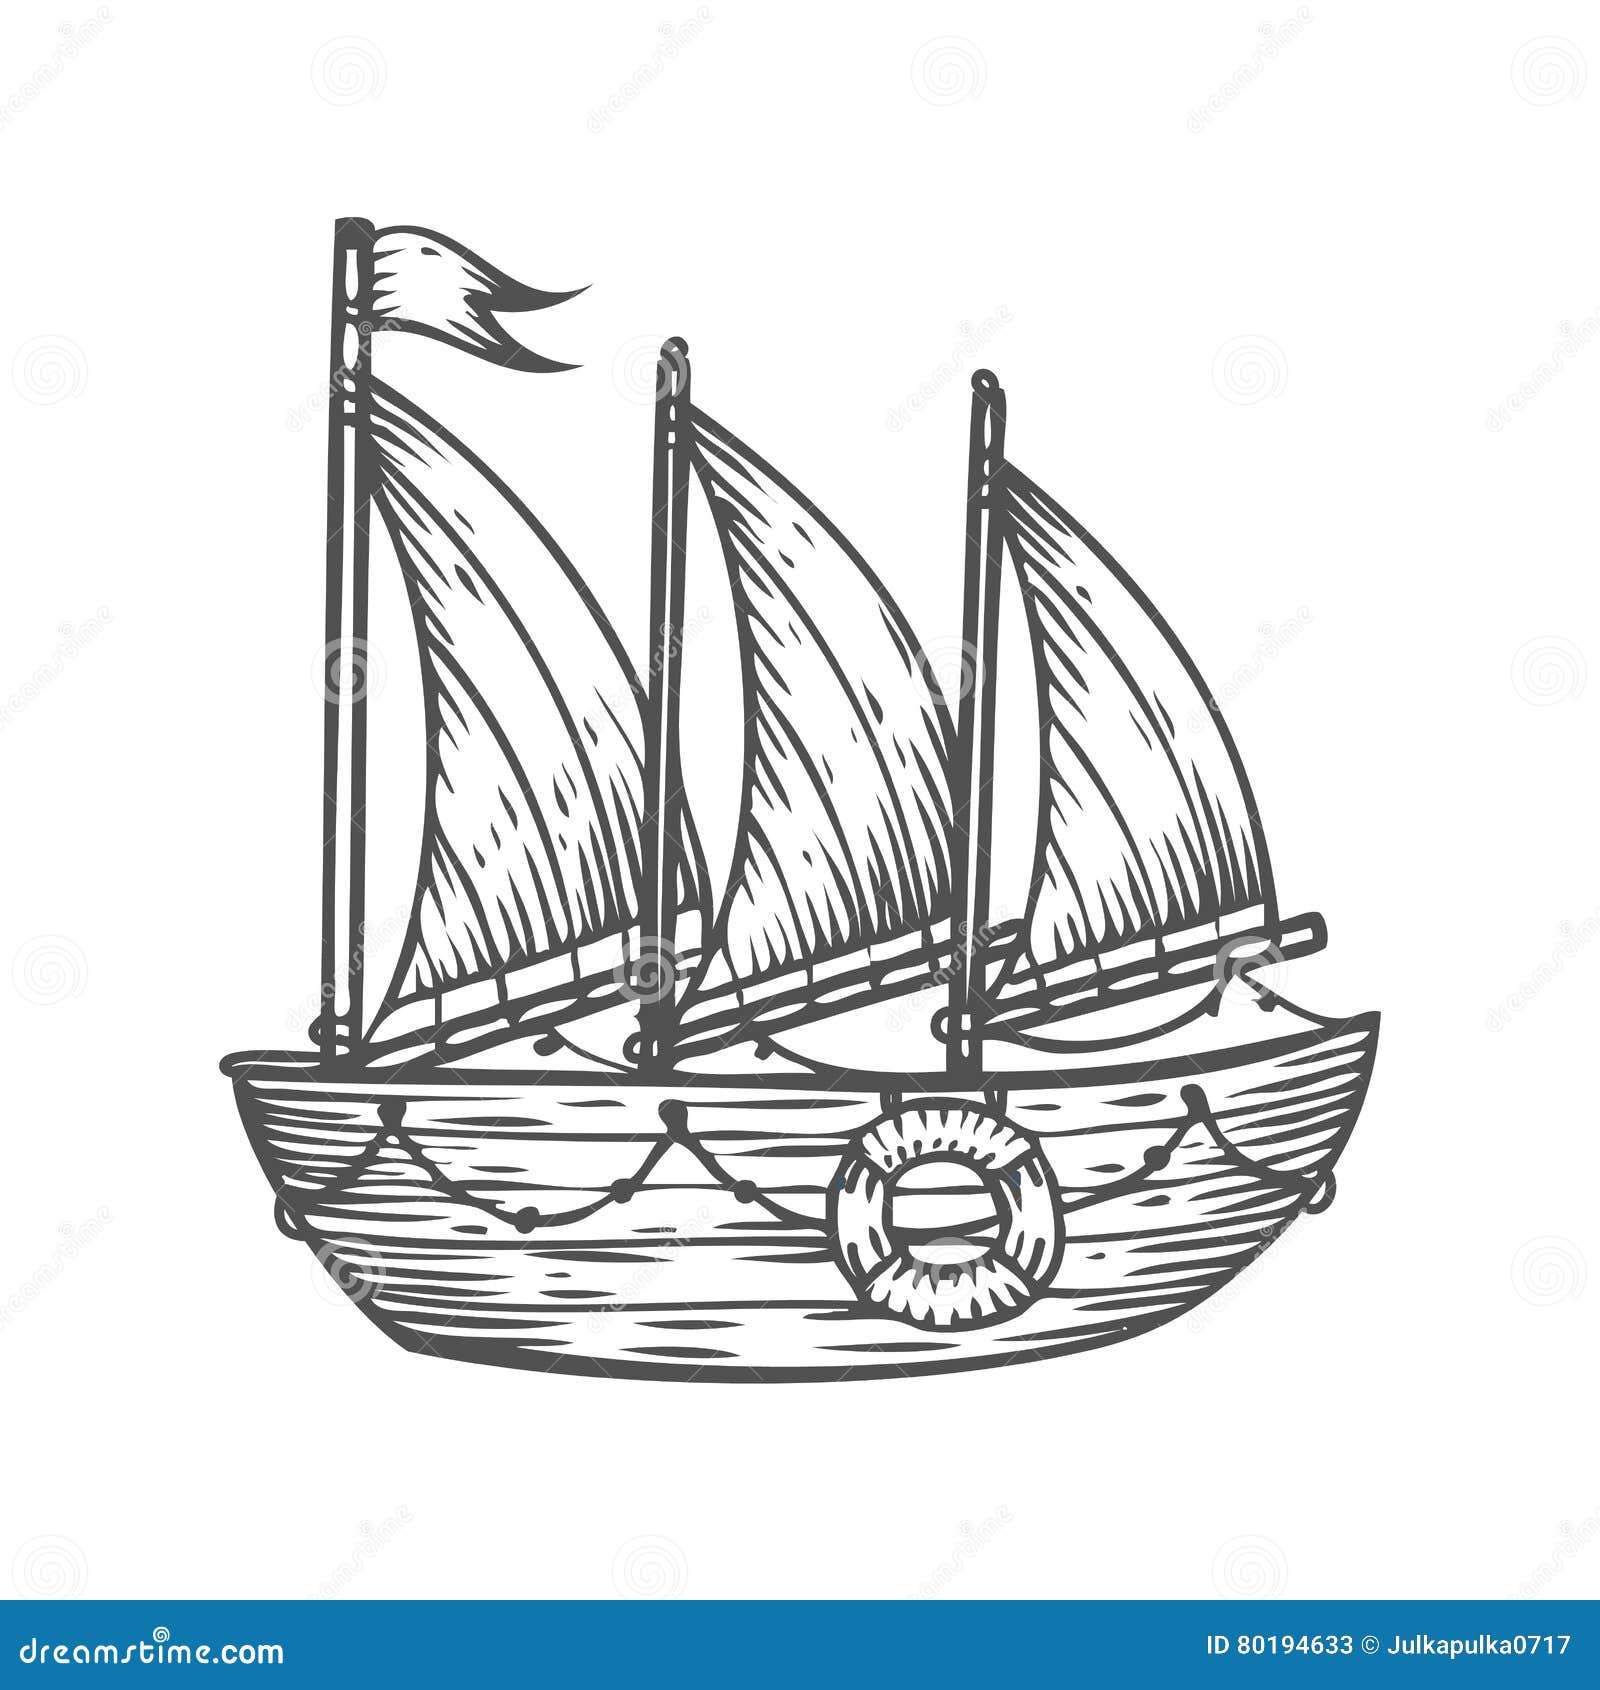 Ship, Boat, Sailboat, Hand Drawn Engraving Sketch Vector ...